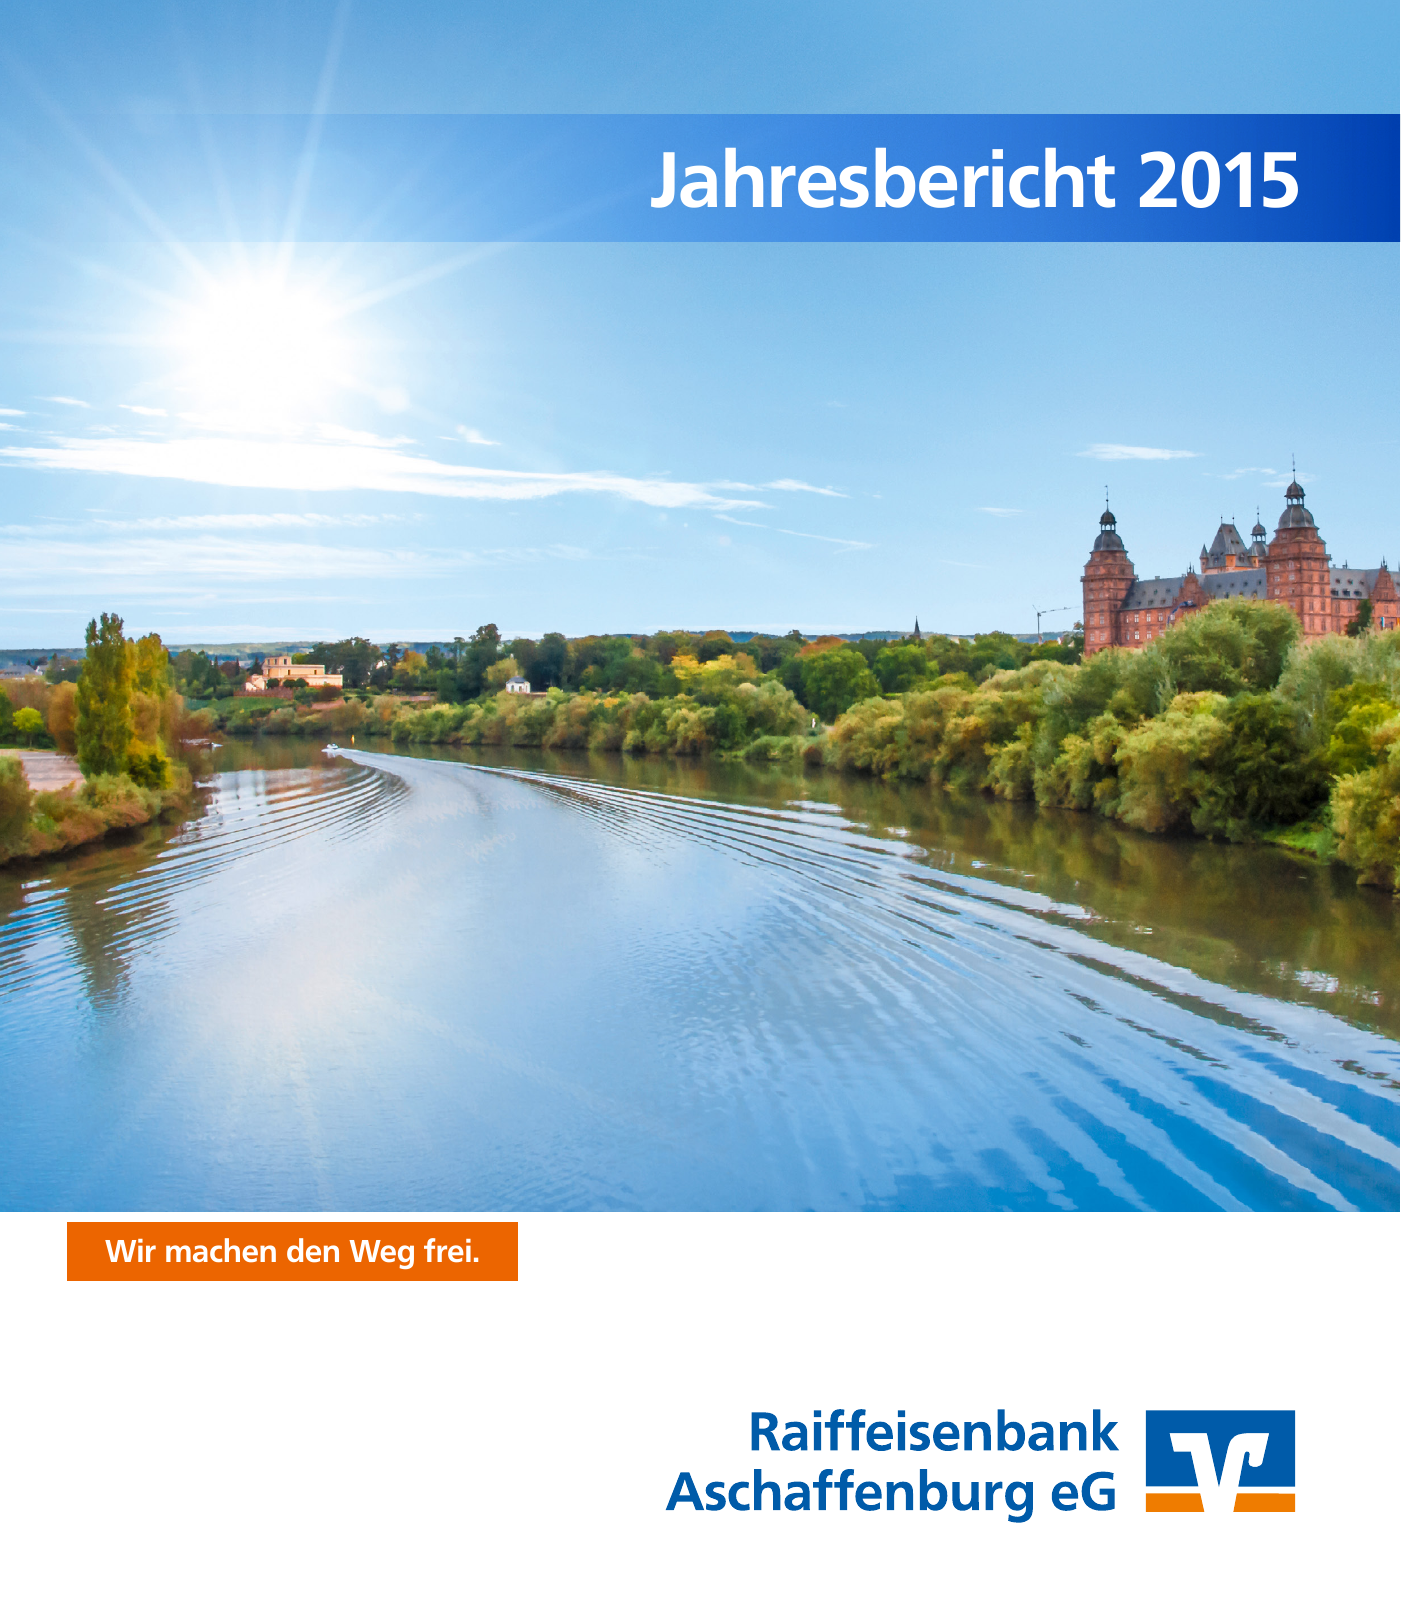 Vorschau Jahresbericht 2015 - Raiffeisenbank Aschaffenburg eG Seite 1